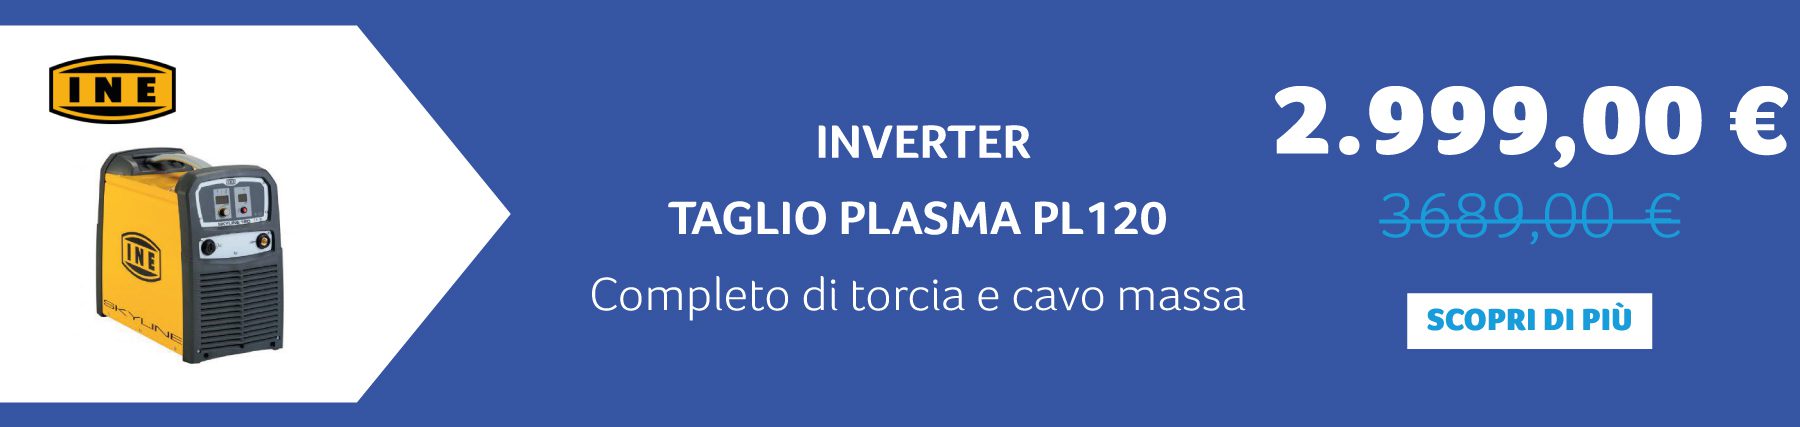 INE -  INVERTER TAGLIO PLASMA PL120 Completo di torcia e cavo massa. 2.999,00 € anziché 3.689,00 €